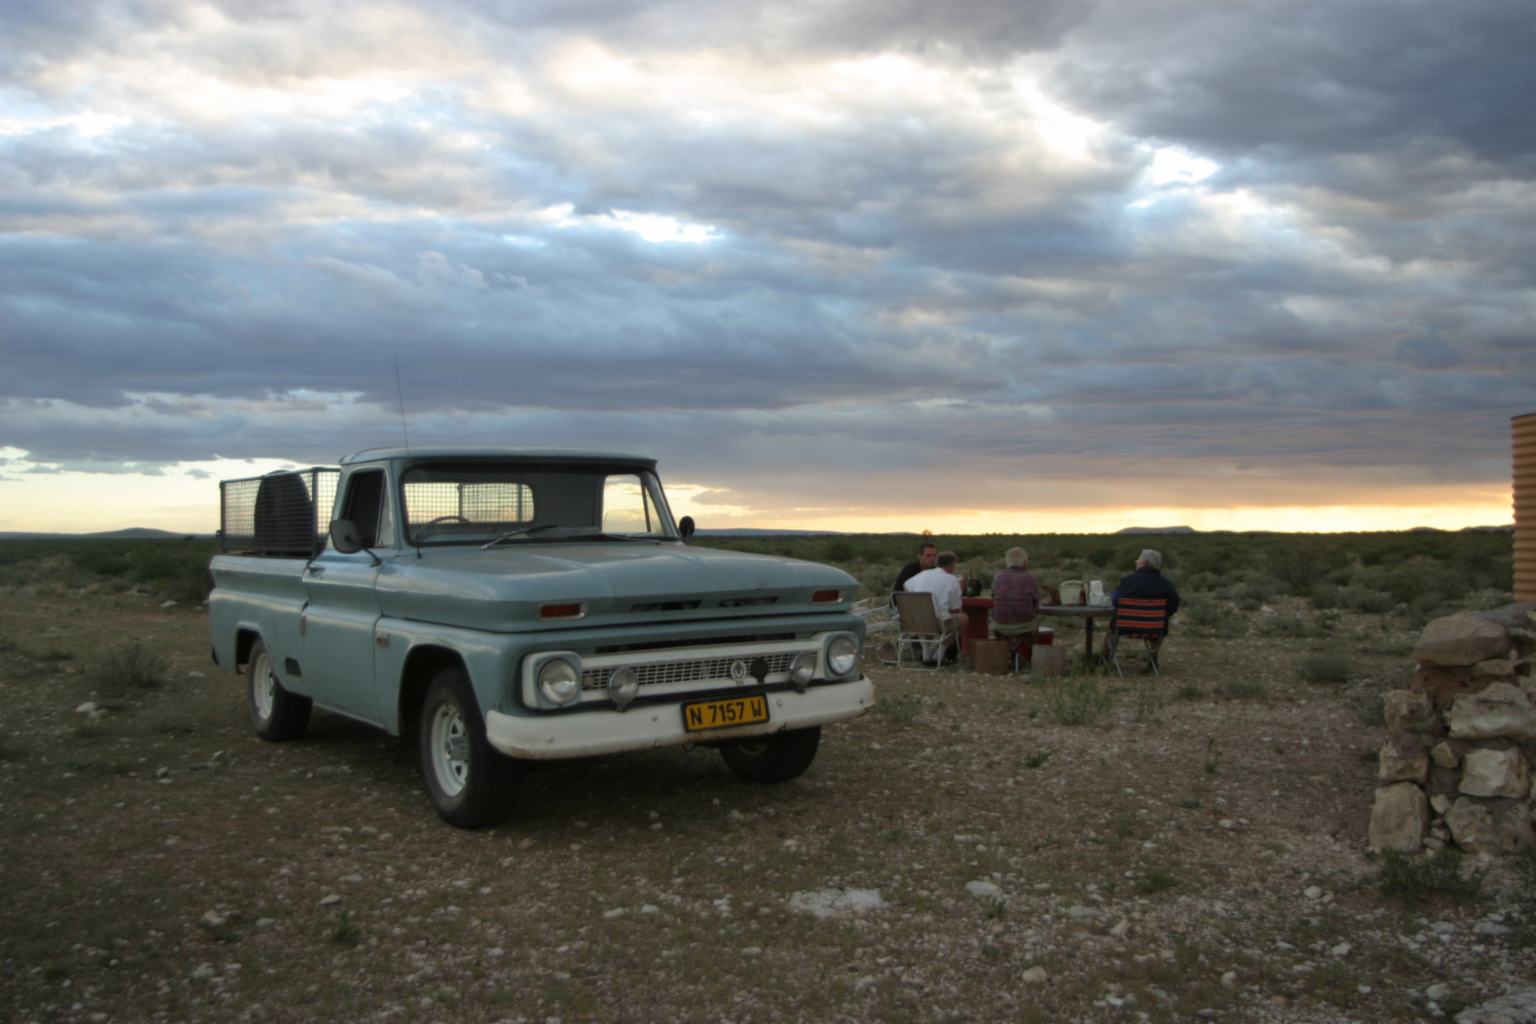 Heimat Farm Dordabis, Namibia